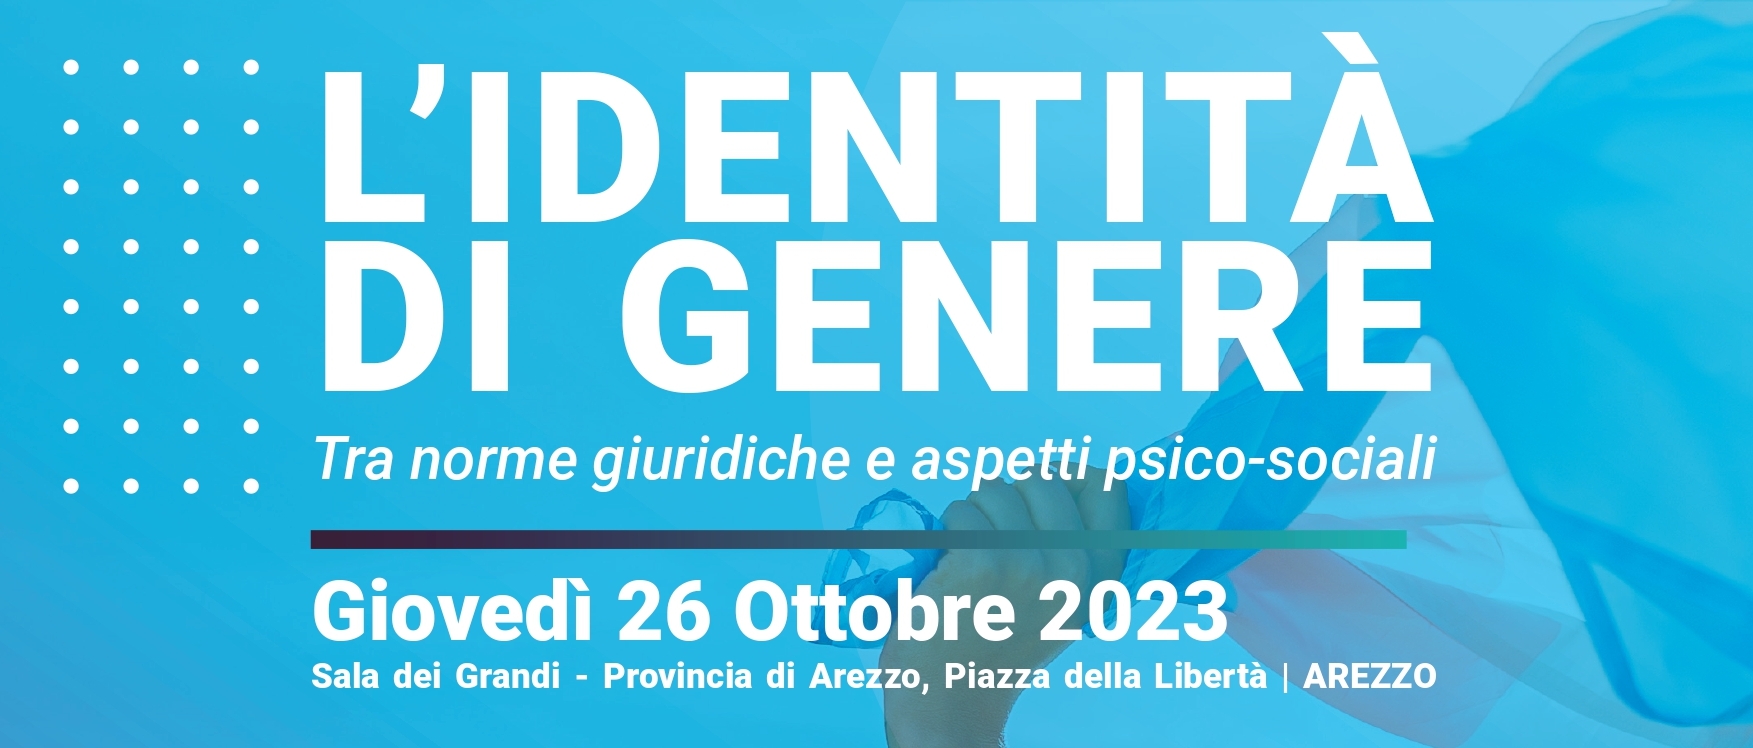 Seminario giuridico sull’identità di genere: Giovedì 26 Ottobre ore 9.00 nella Sala dei Grandi della Provincia di Arezzo